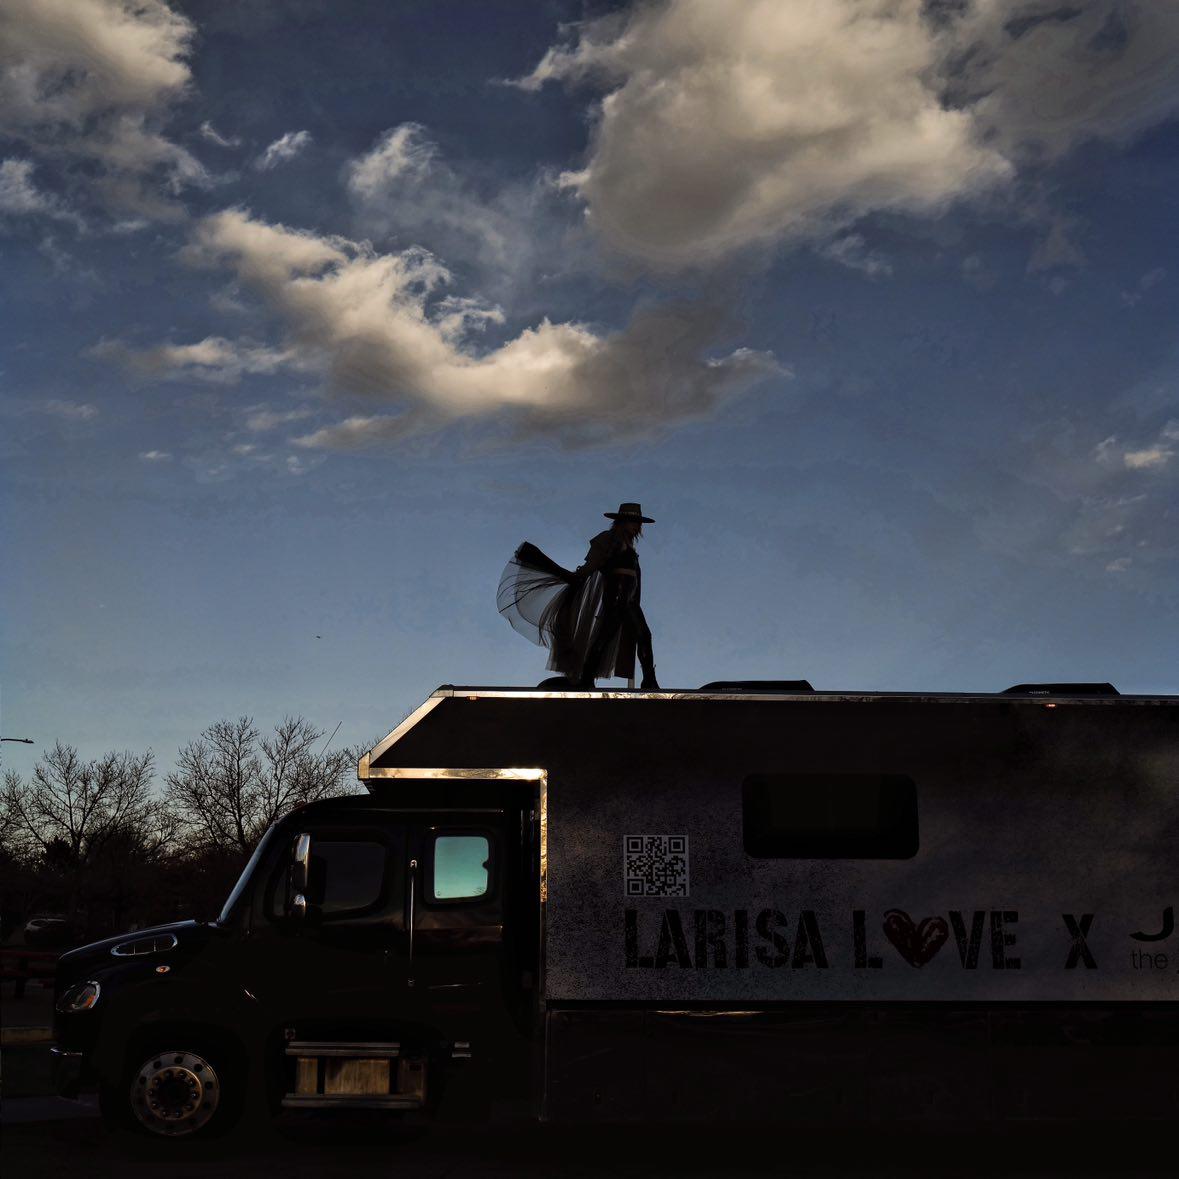 Larisa Love Artist Daydream Tour: September 28 Boise, ID